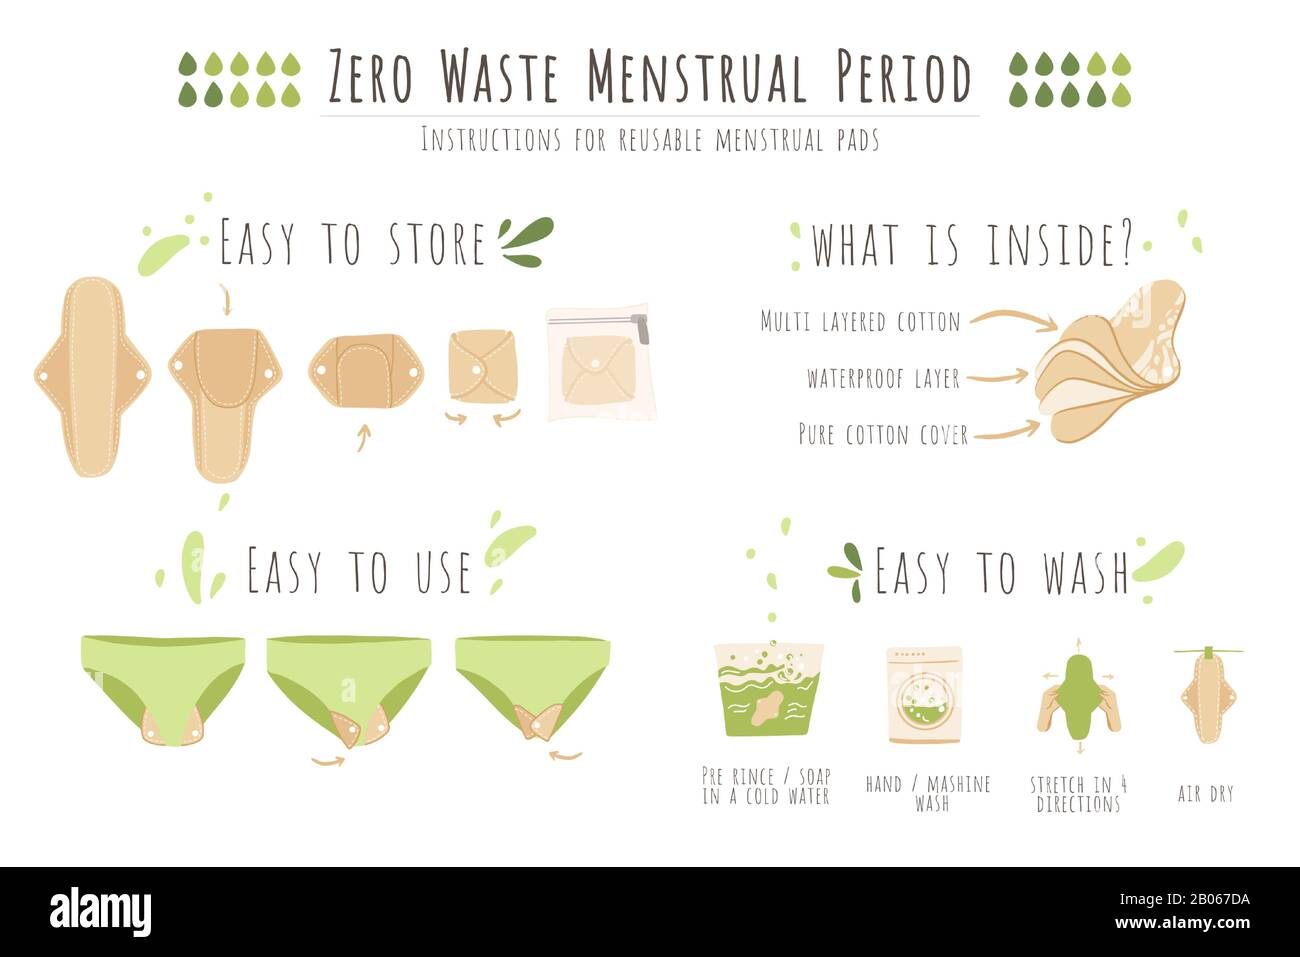 Zéro déchet femme période menstruelle vecteur dessin animé plat ensemble d'instructions d'utilisation, de stocker et de laver les tampons menstruels. Instructions pour l'environnement Illustration de Vecteur